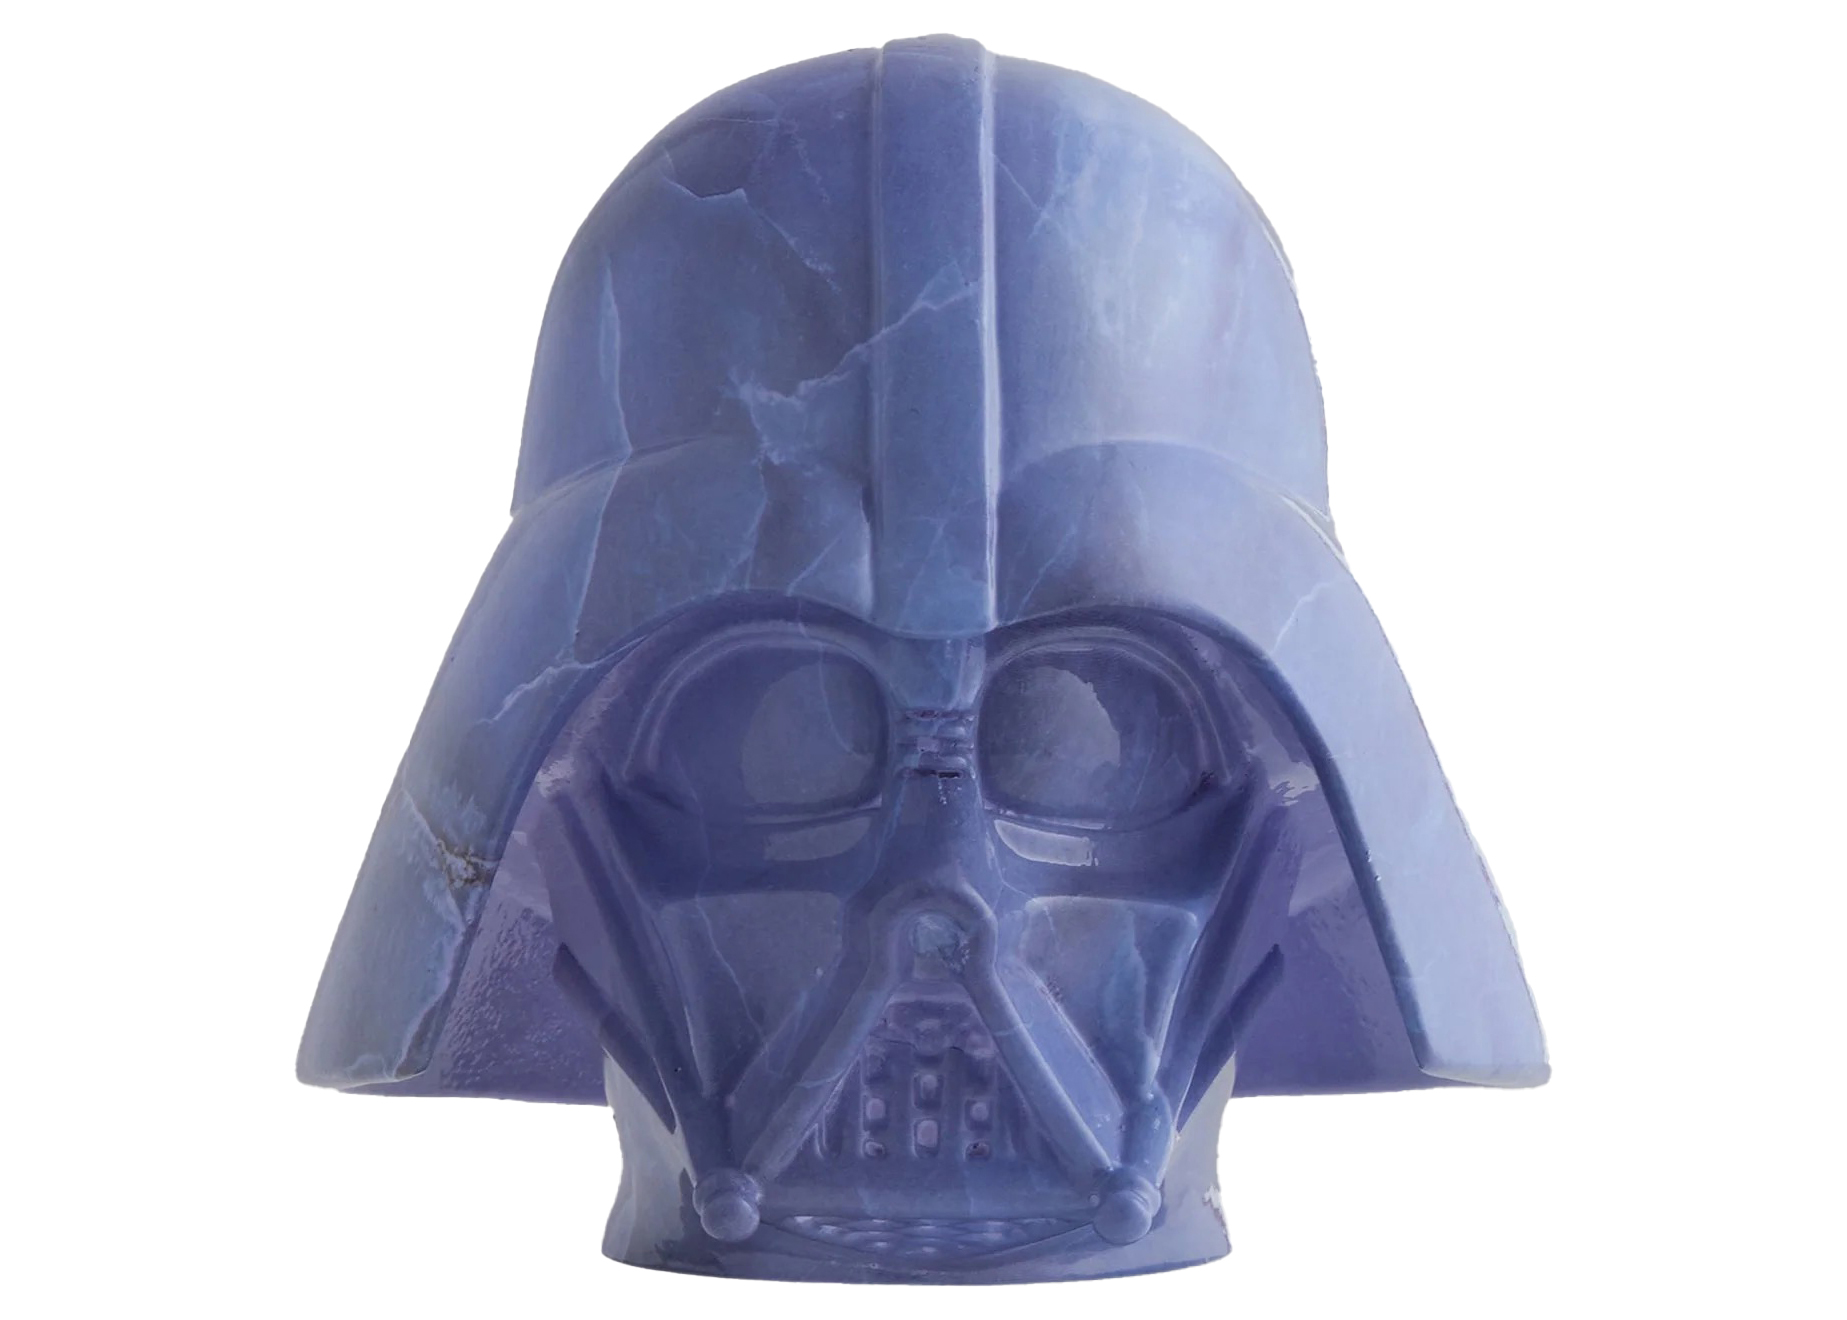 Kith Star Wars Darth Vader Helmet